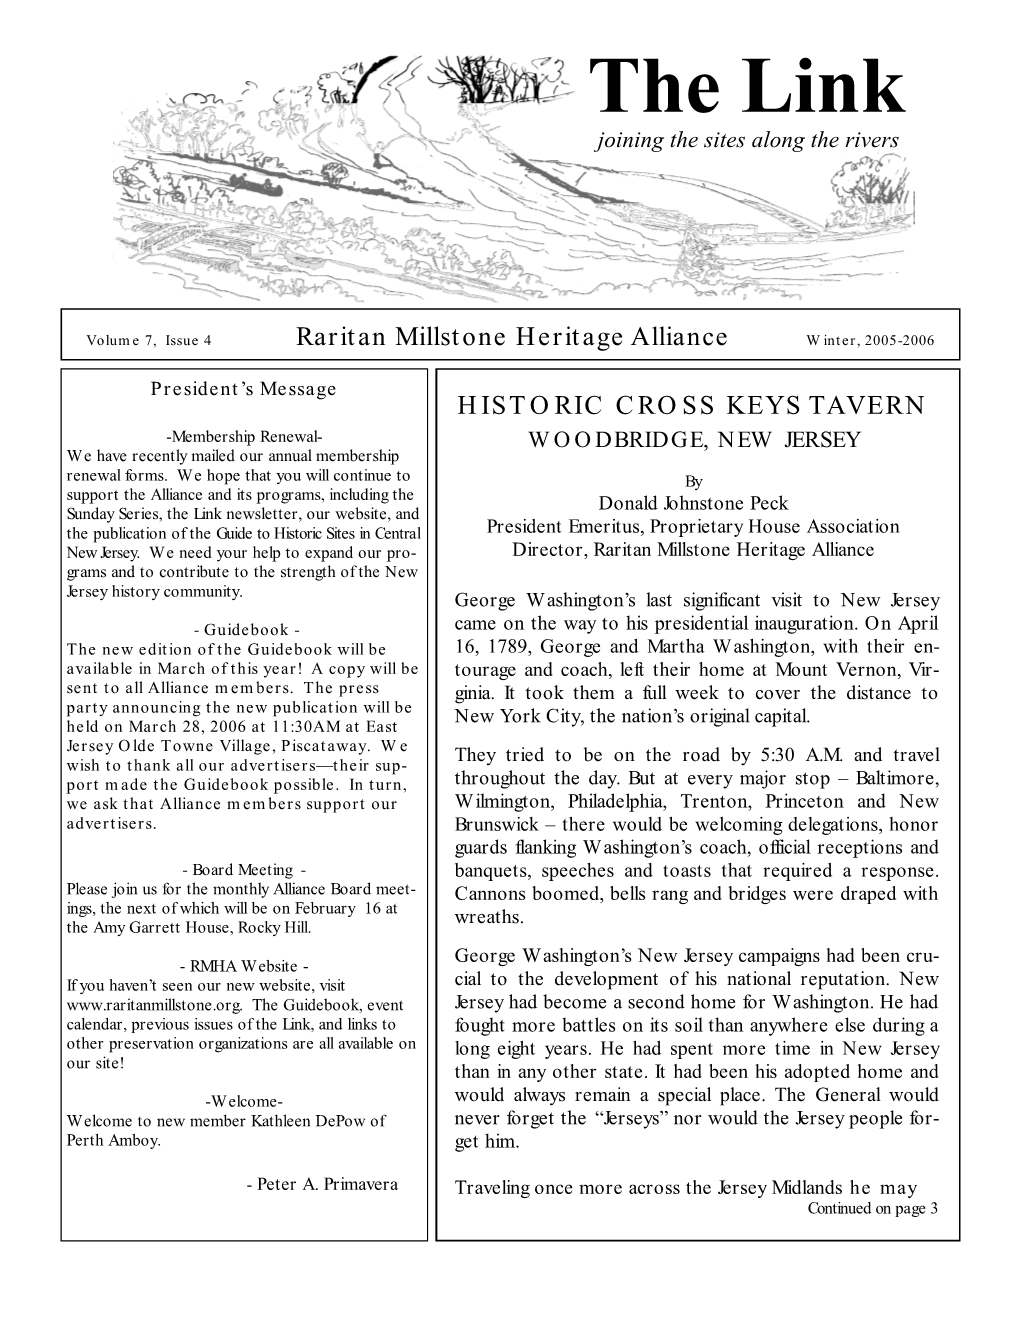 Winter 2005 Newsletter